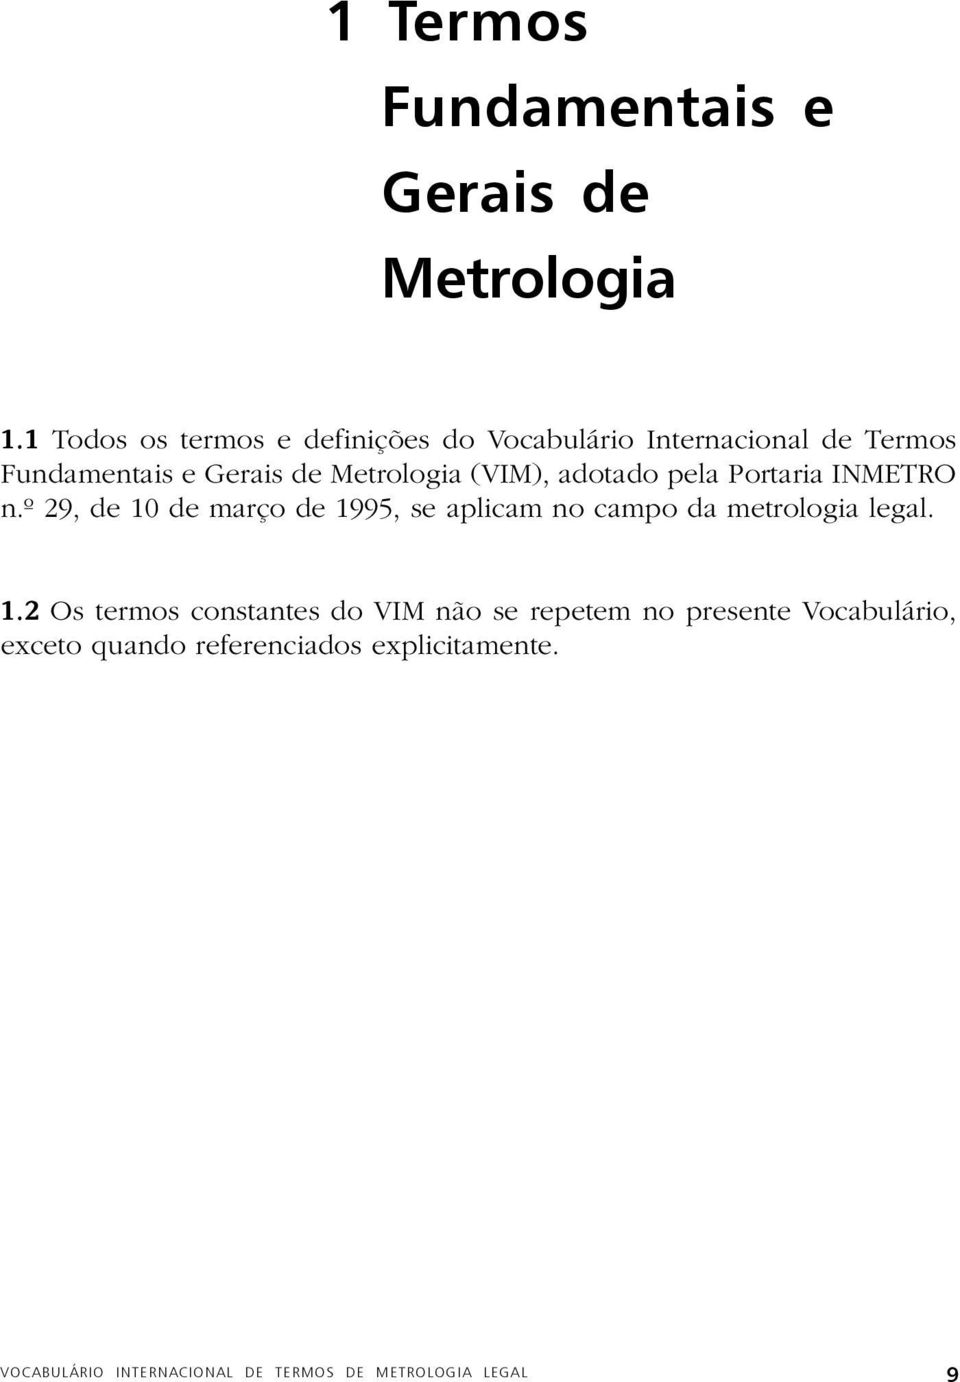 (VIM), adotado pela Portaria INMETRO n.º 29, de 10 de março de 1995, se aplicam no campo da metrologia legal.